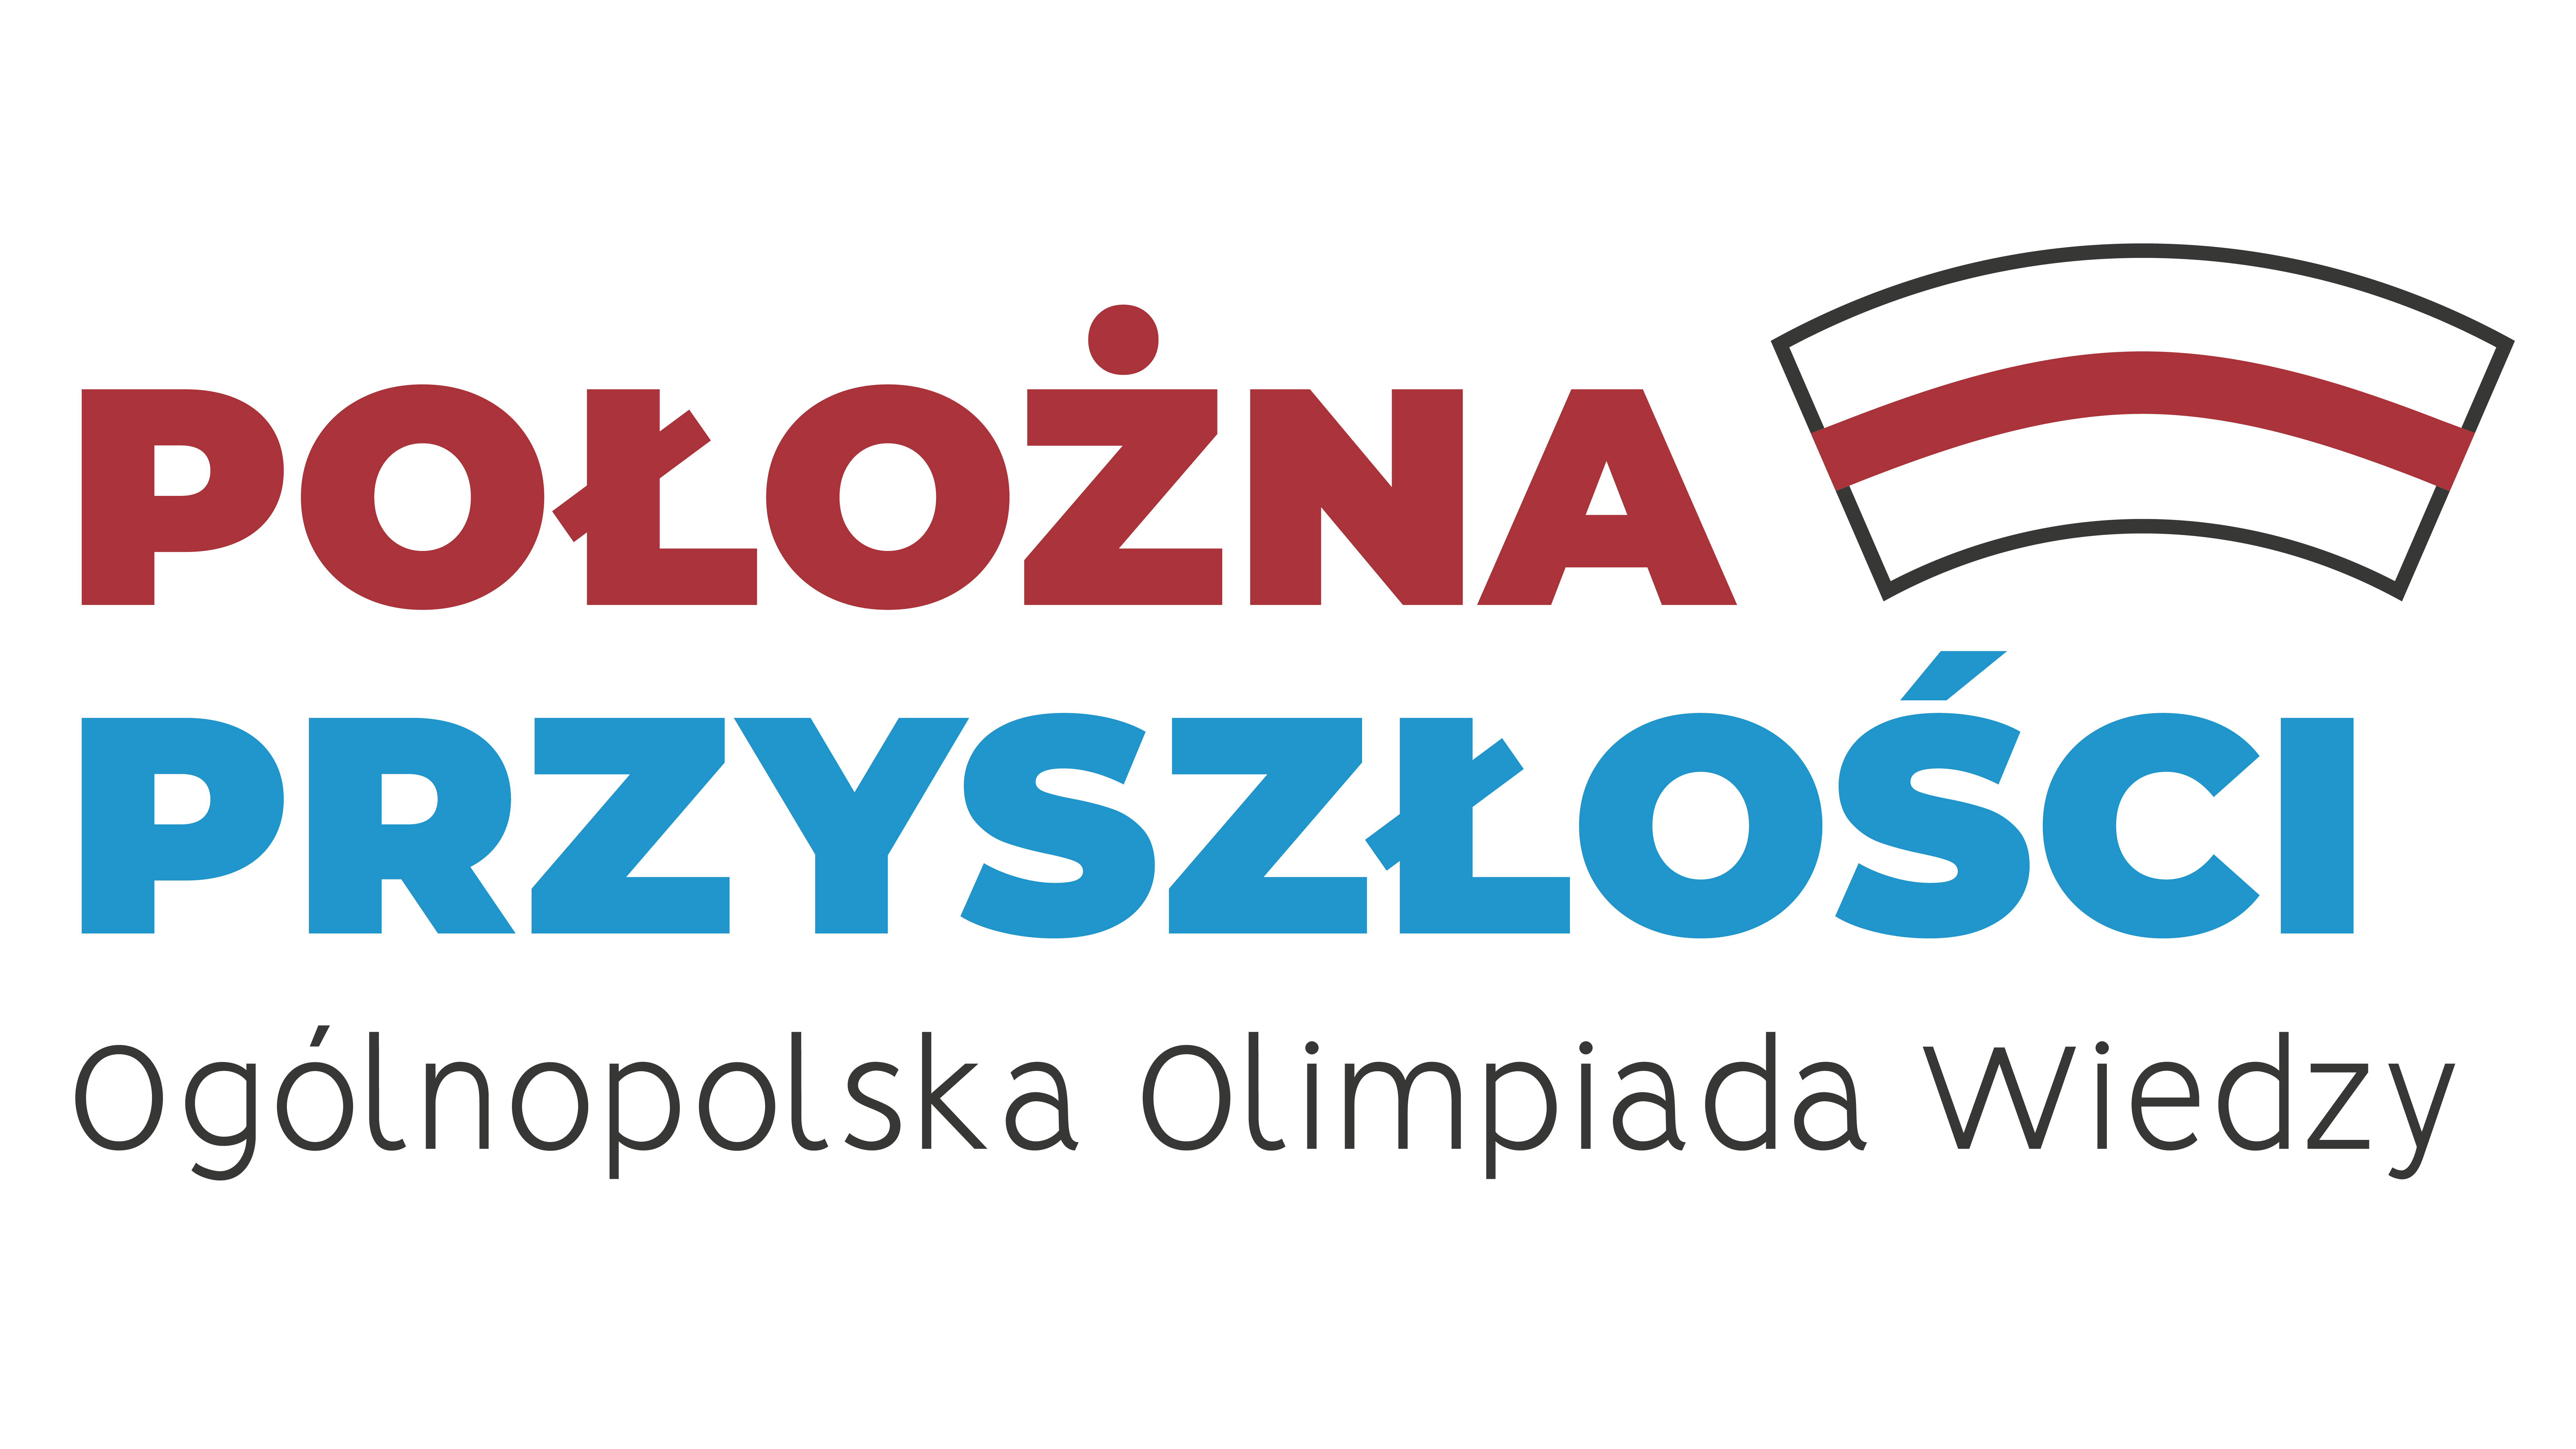 Polozna_przyszlosci_logo